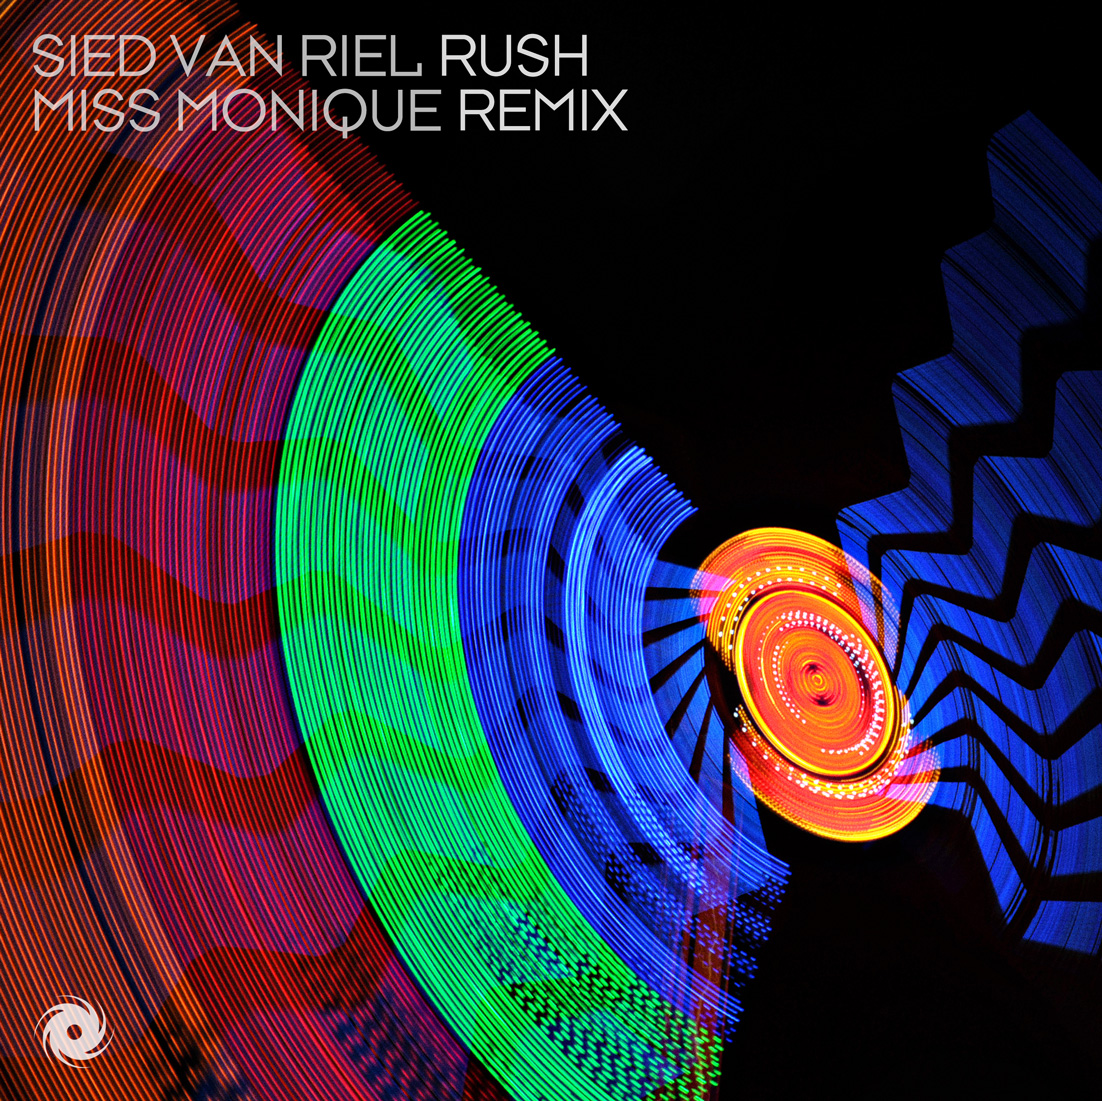 Sied van Riel presents Rush (Miss Monique Remix) on Black Hole Recordings